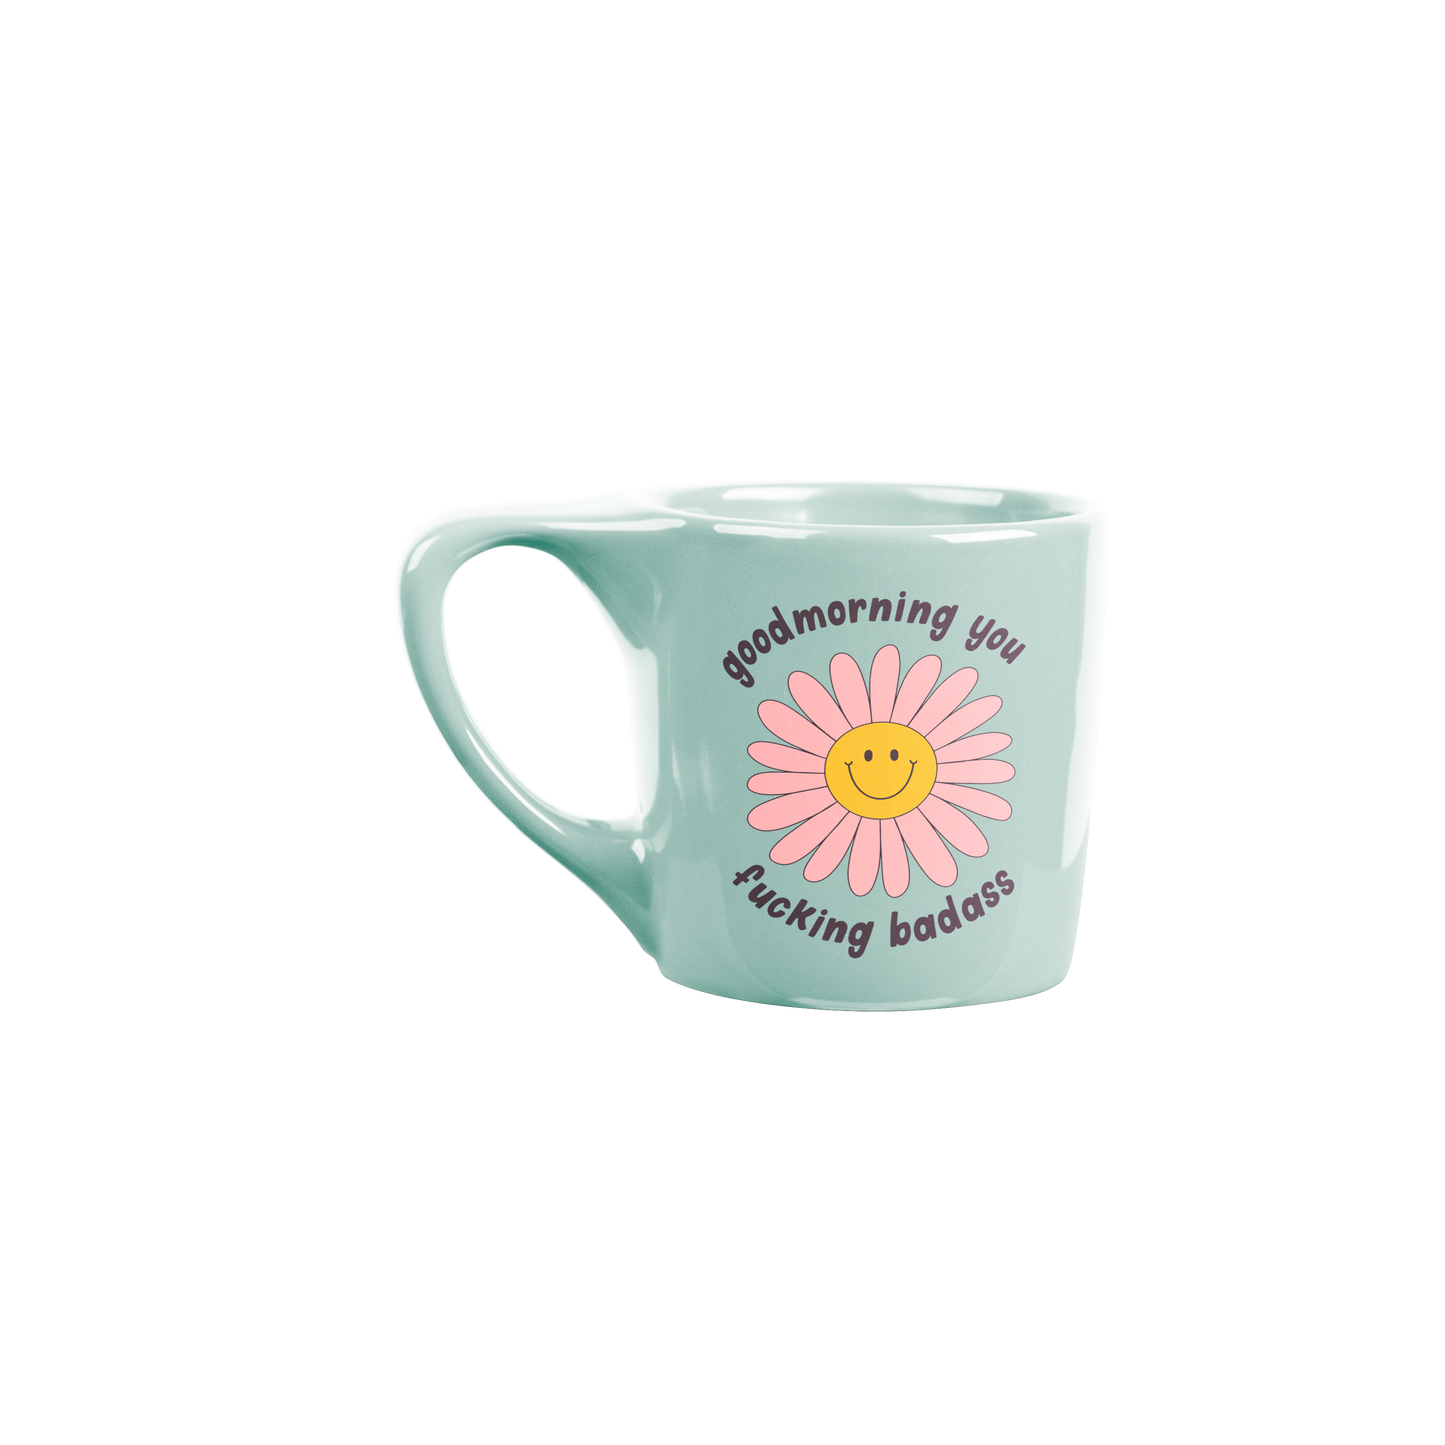 Mug (Ceramic) - Good Morning